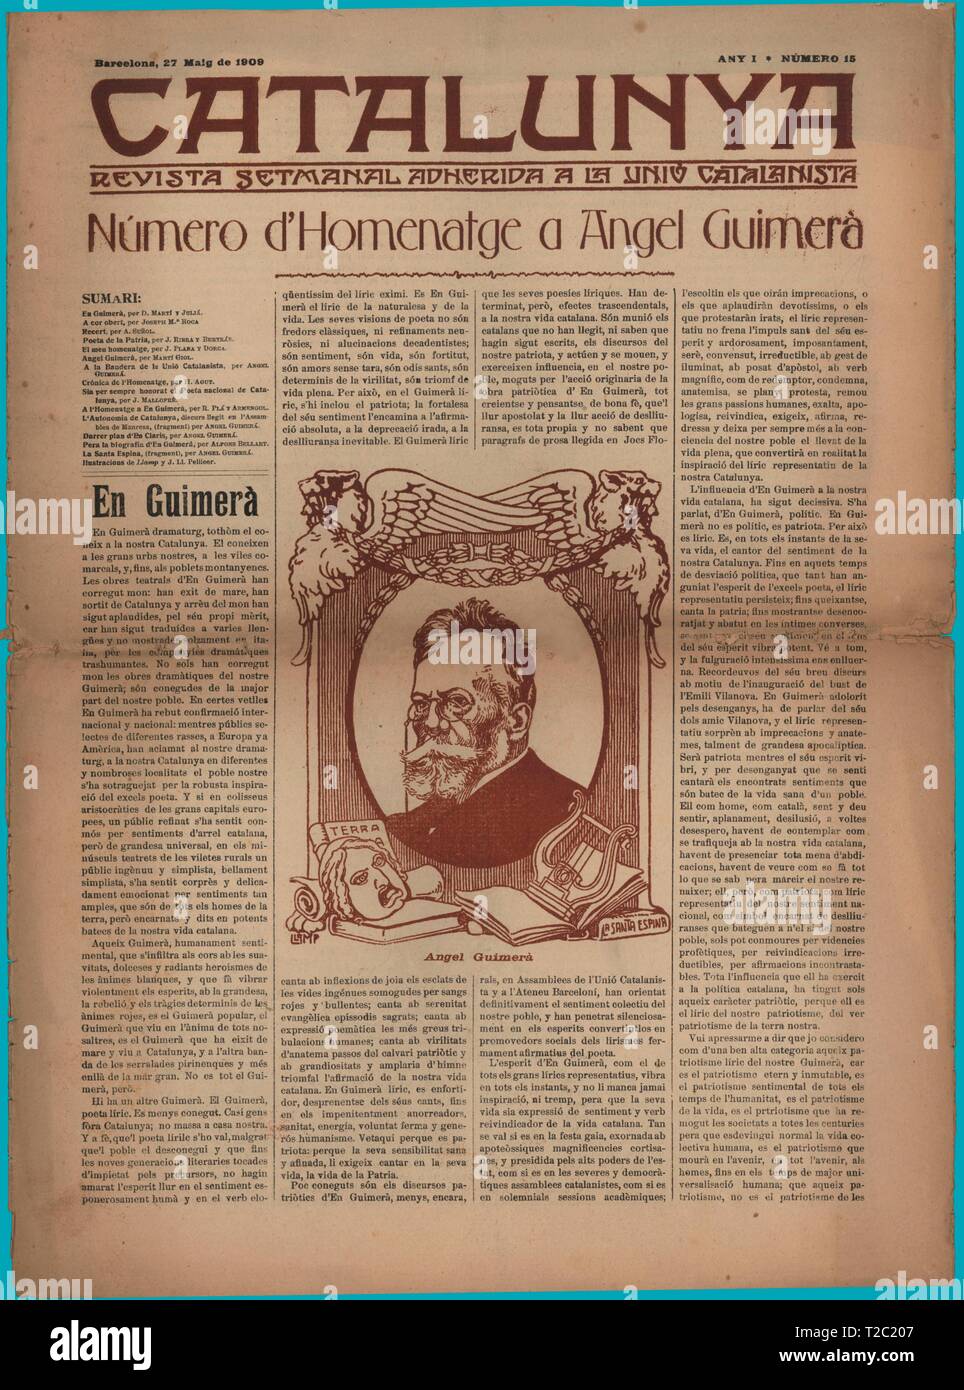 Portada de la revista semanal Catalunya, editada en Barcelona, mayo de 1909. Àngel Guimerà Jorge. Stock Photo